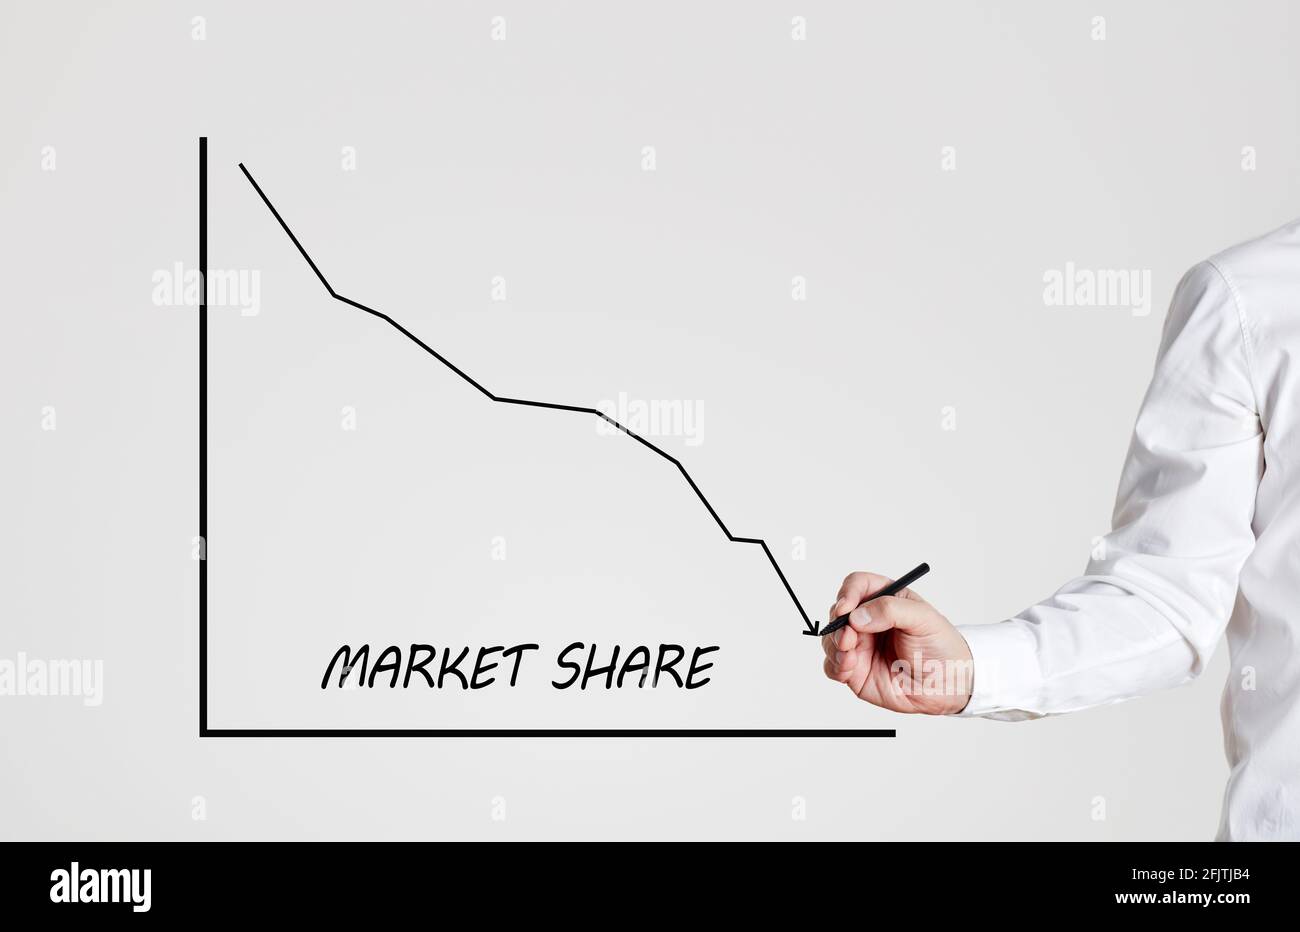 Businessman zeichnet ein abnehmendes Liniendiagramm mit dem Wortmarktanteil. Rückgang des Marktanteils von Unternehmen. Stockfoto